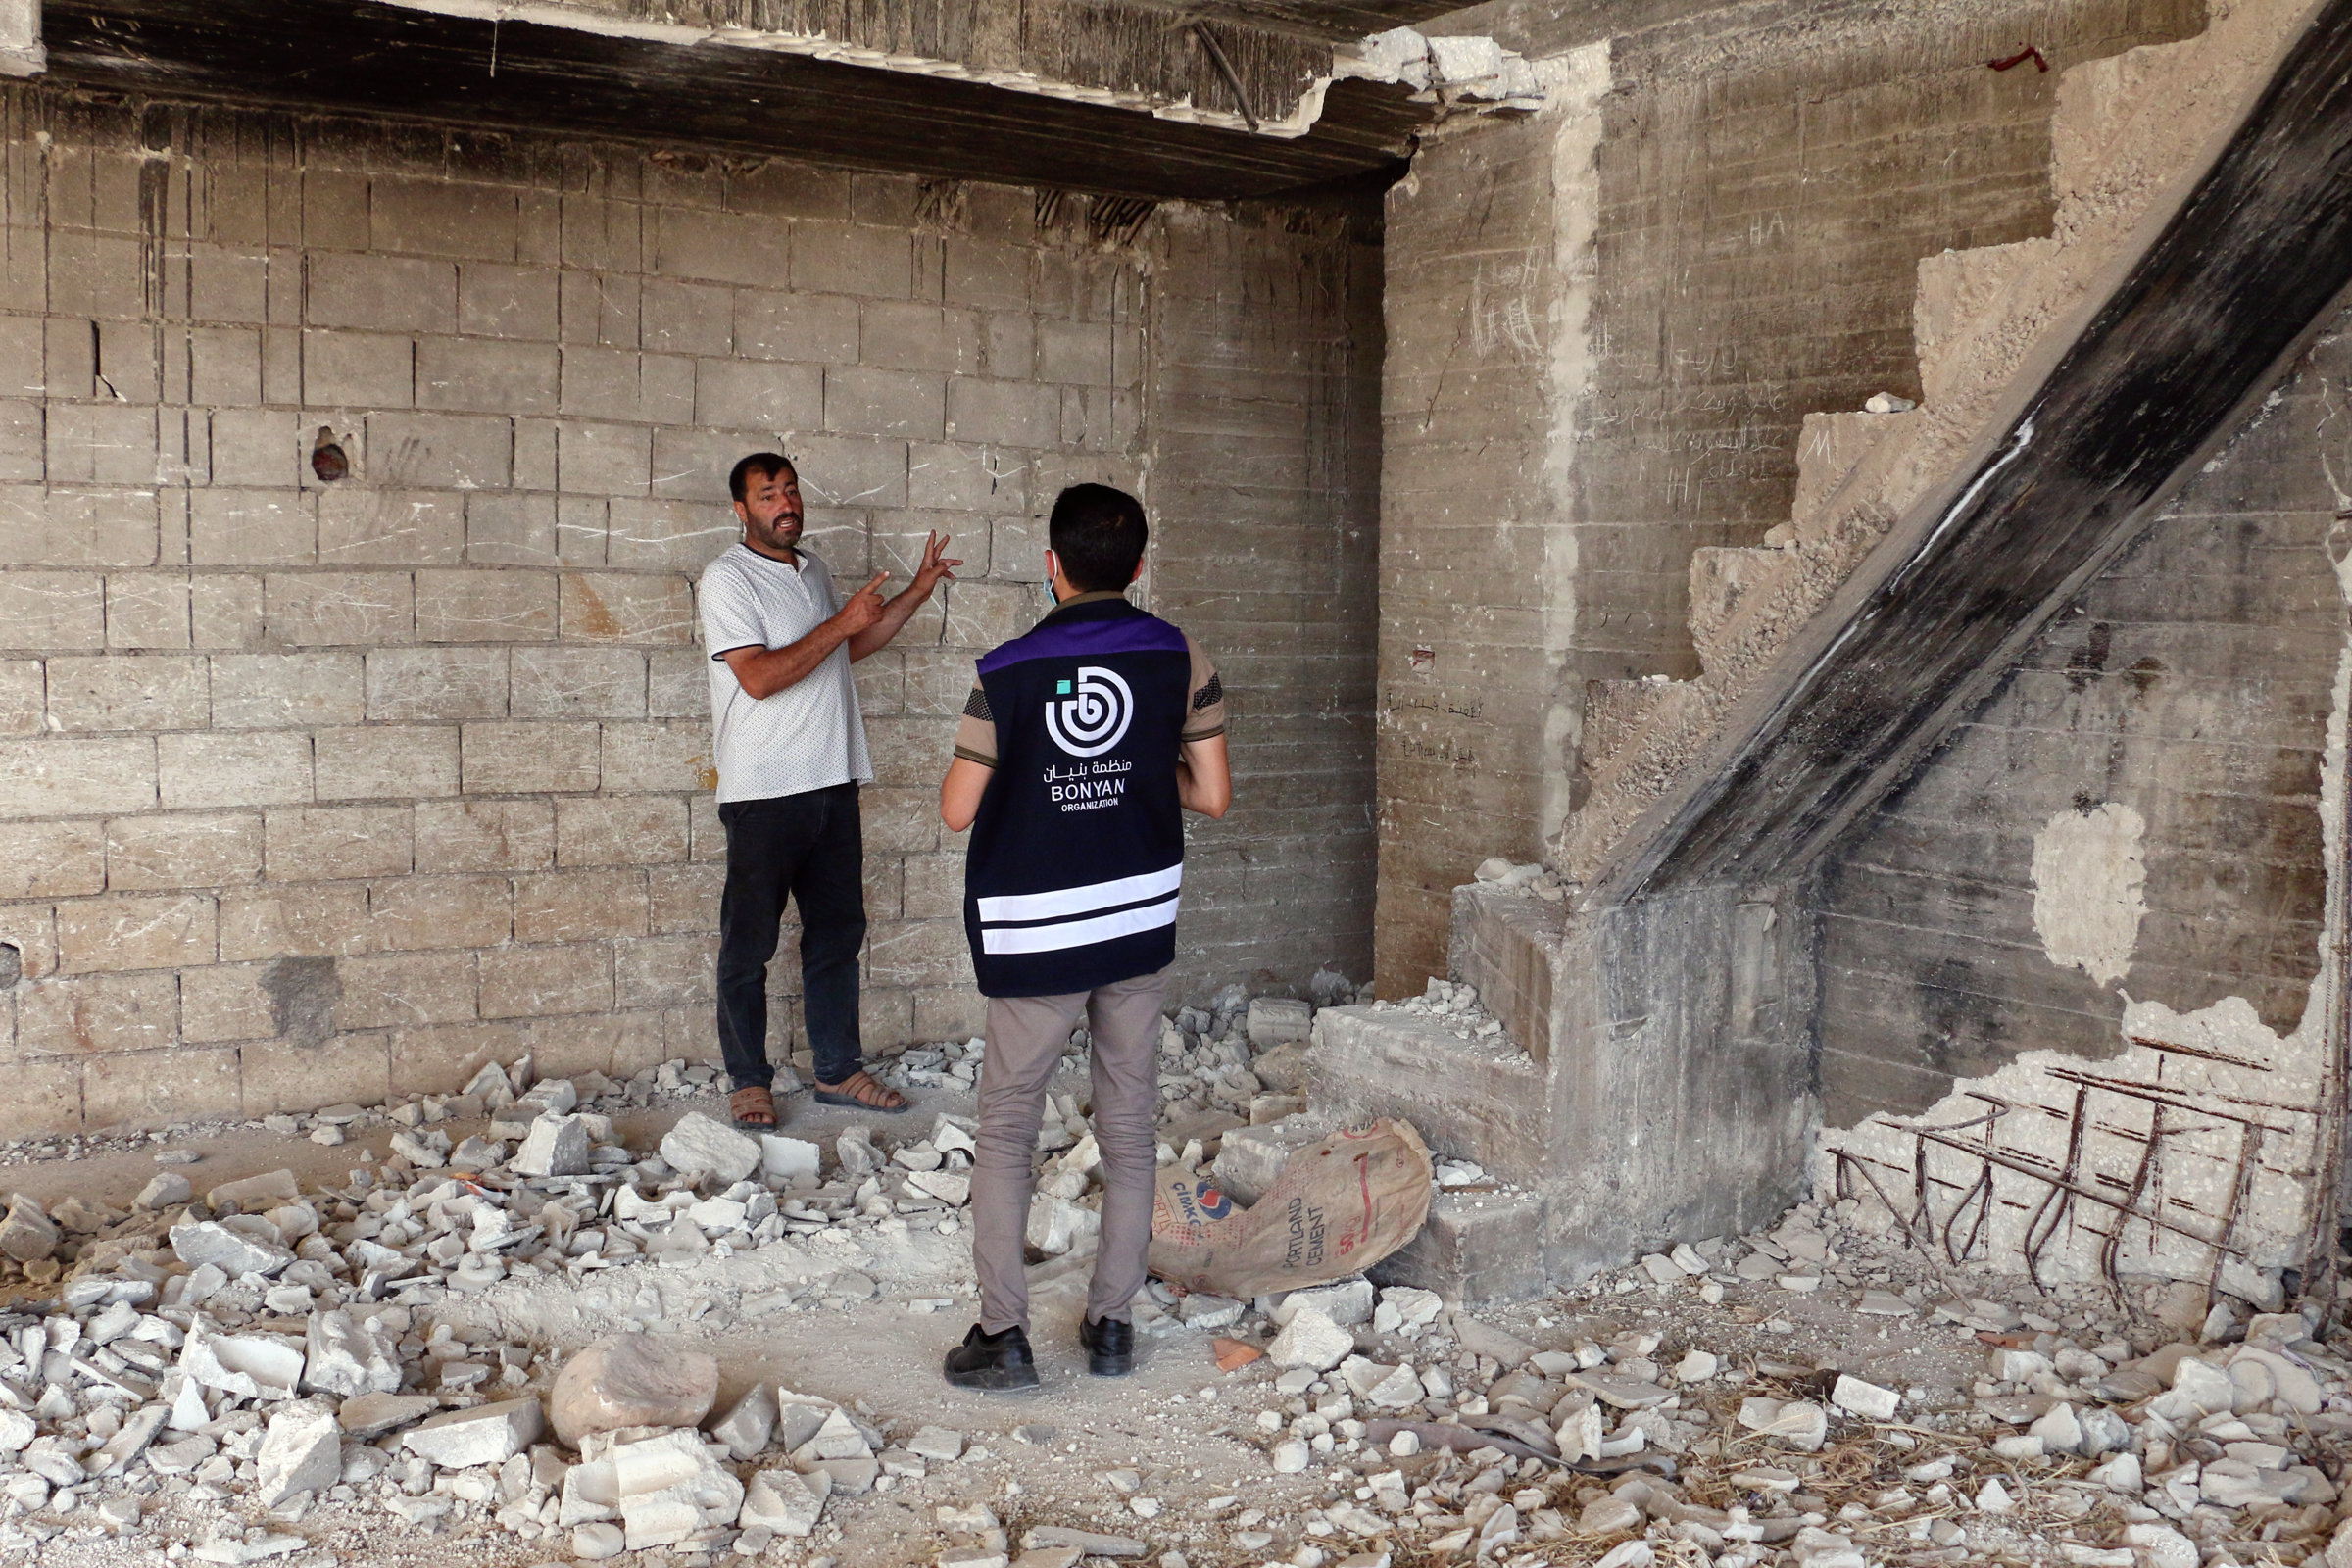 Ahmed Hassan und ein Mitarbeiter von Bonyan stehen in einem offensichtlich zerstörten Haus. Am Boden liegen Trümmer, rechts sieht man eine stark beschädigte Treppe. Hinter Ahmed ist eine offene Ziegelwand zu sehen.